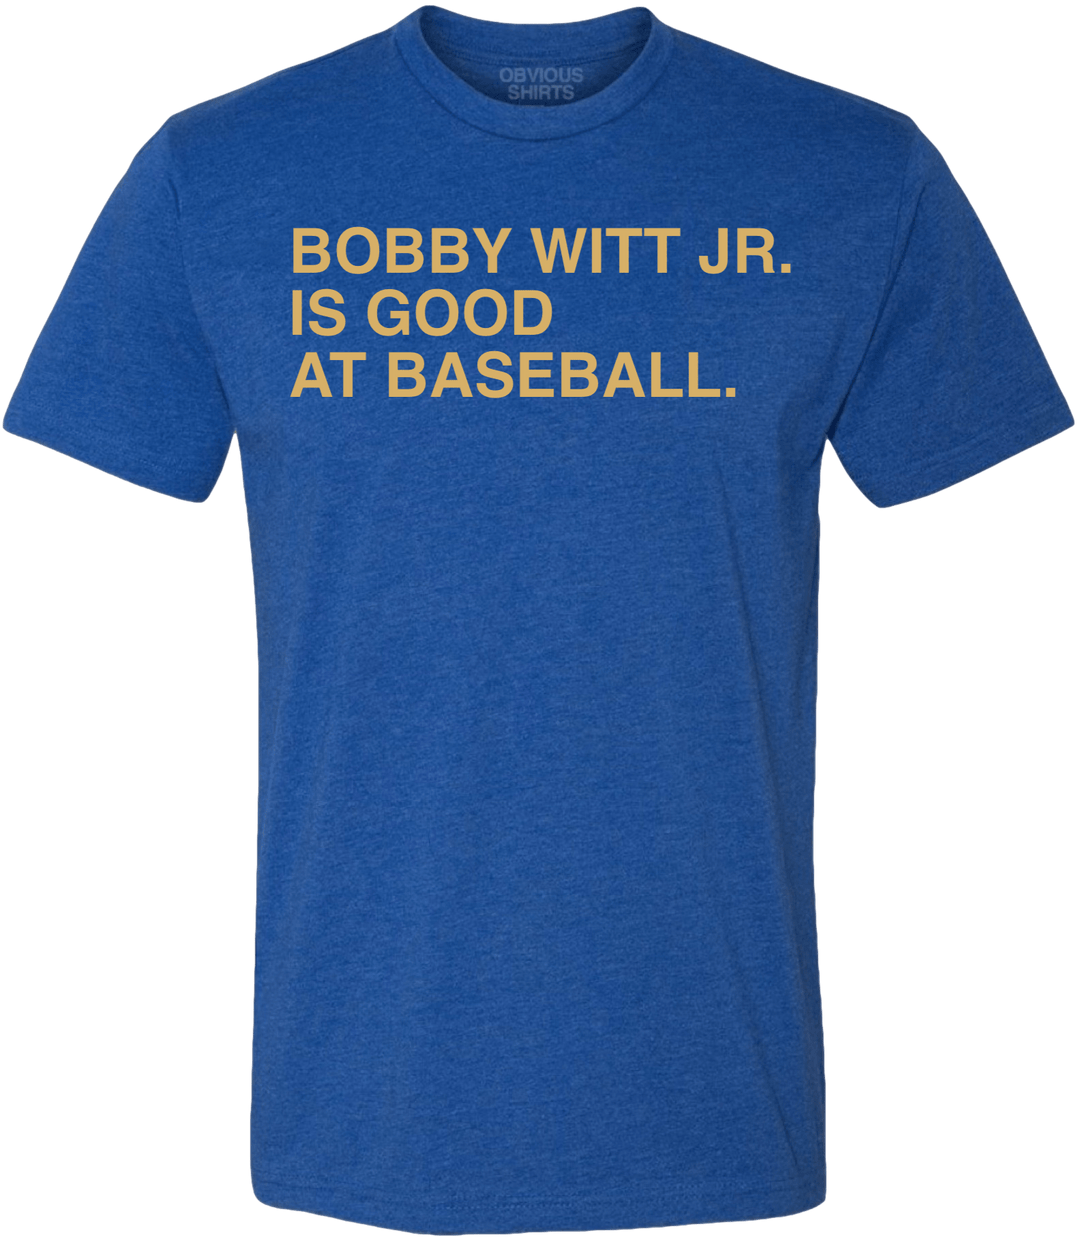 BOBBY WITT JR. IS GOOD AT BASEBALL. - OBVIOUS SHIRTS